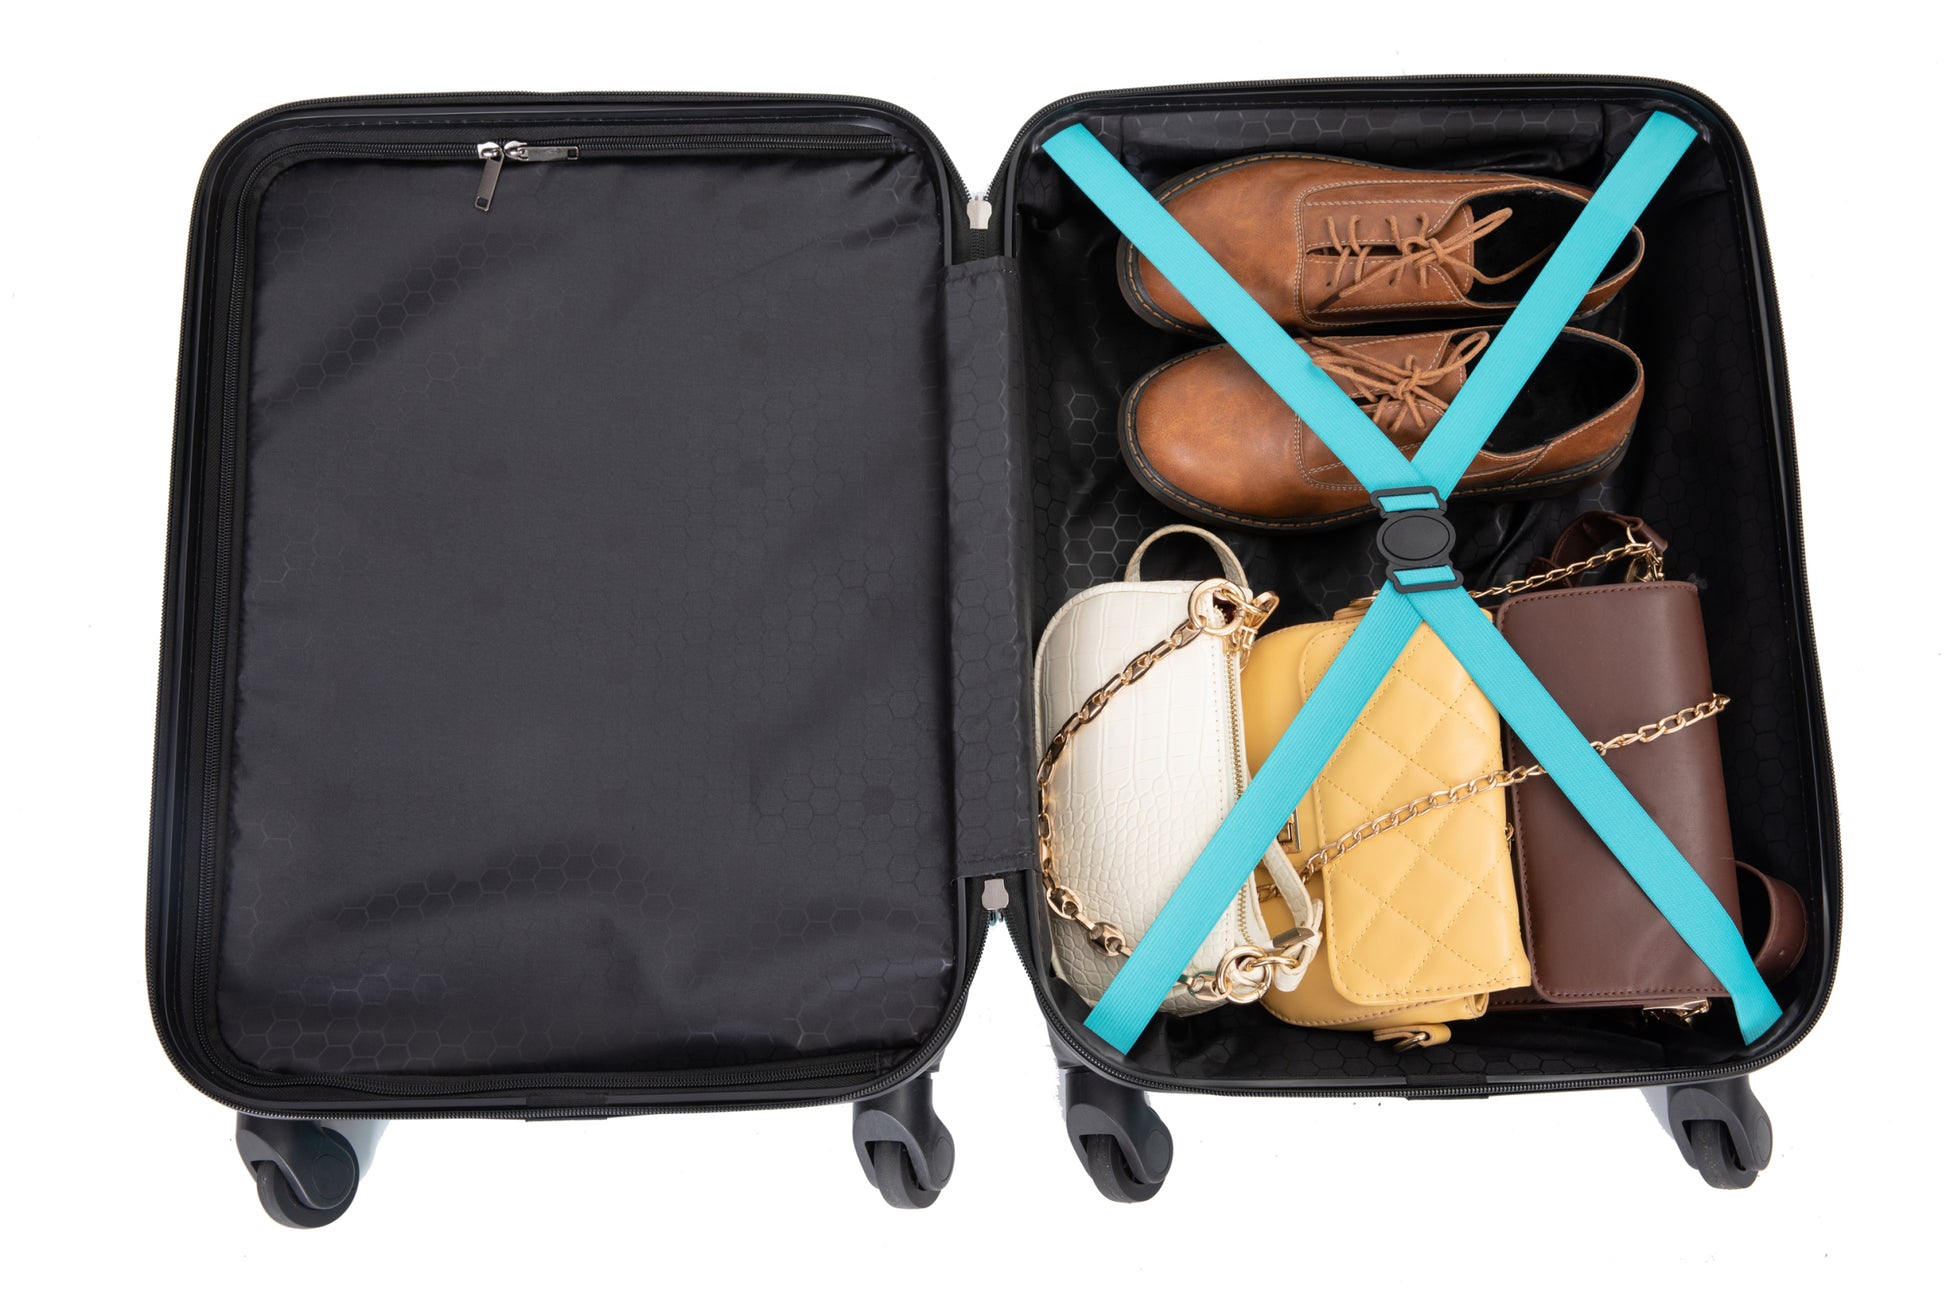 19" Three Piece Carry On Luggage Lightweight